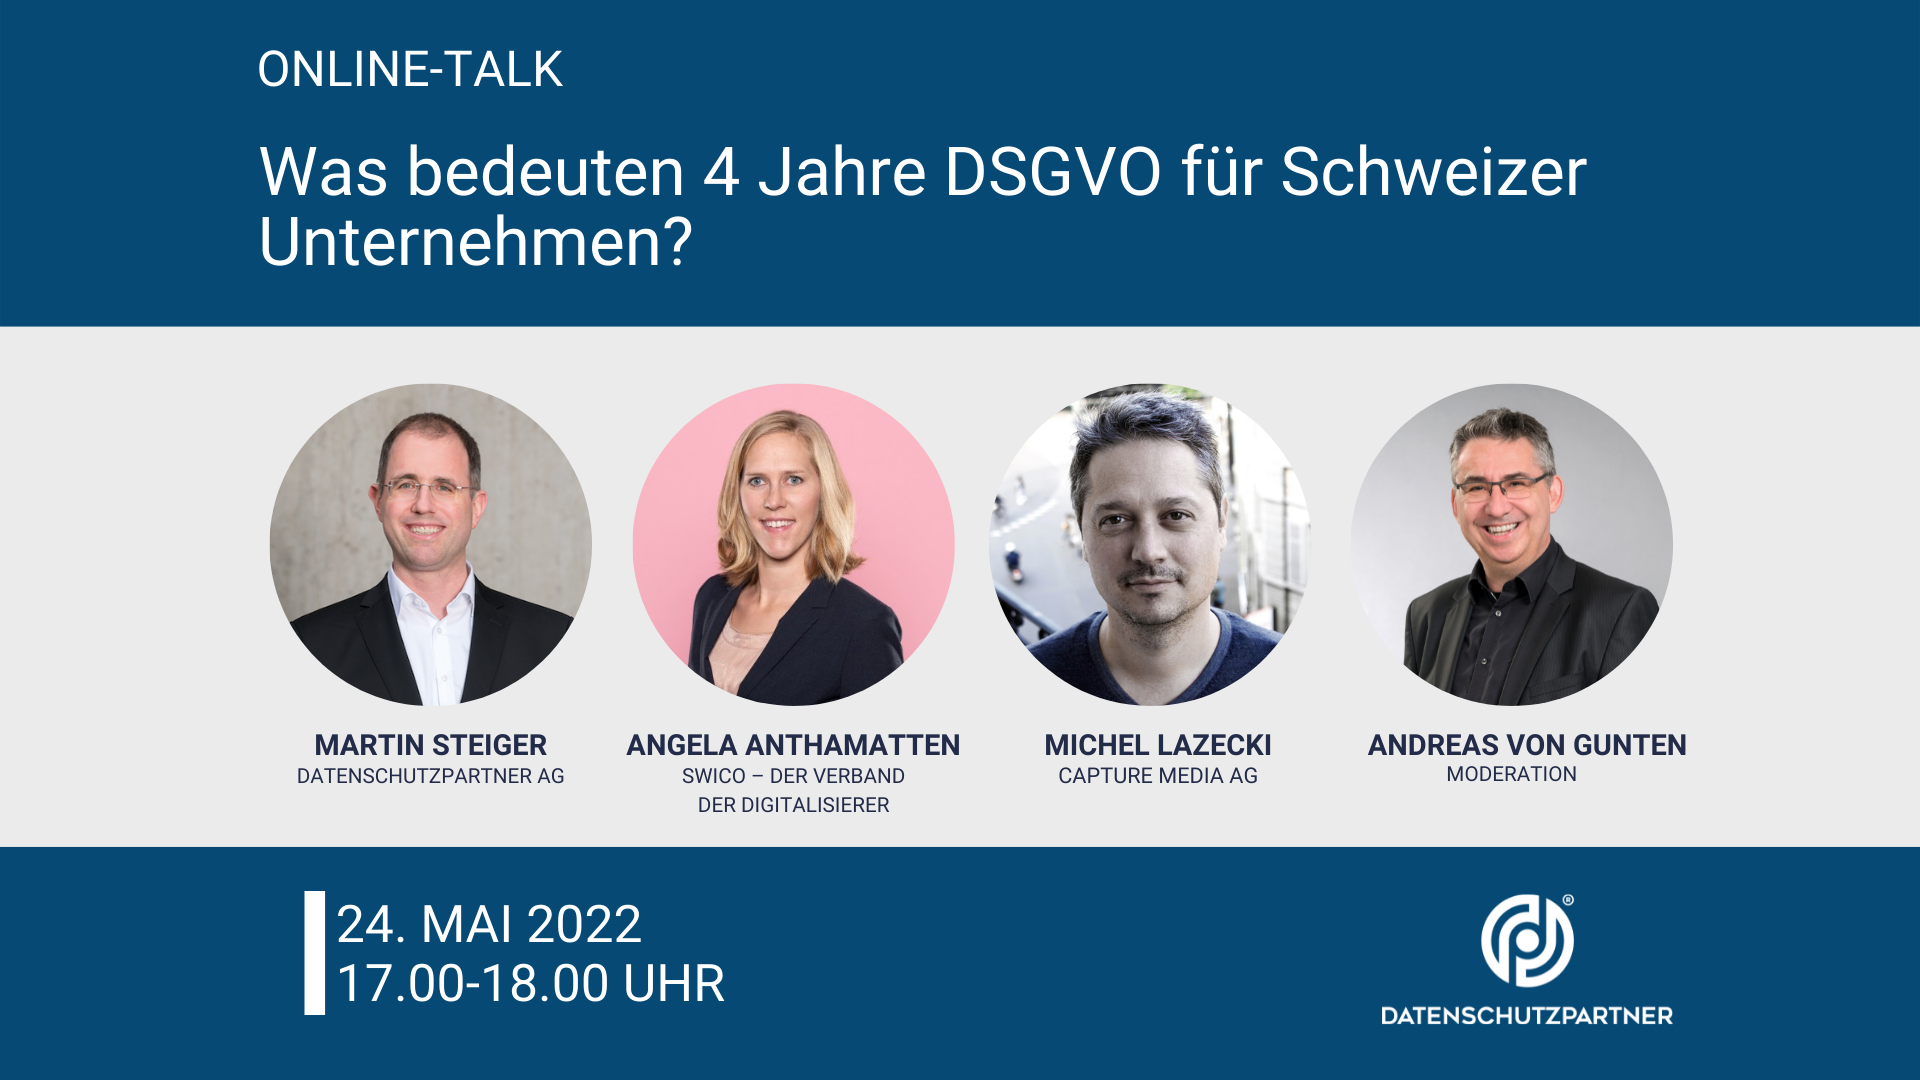 Bild: Hinweis auf Online-Talk «Was bedeuten 4 Jahre DSGVO für Schweizer Unternehmen?» am 24. Mai 2022